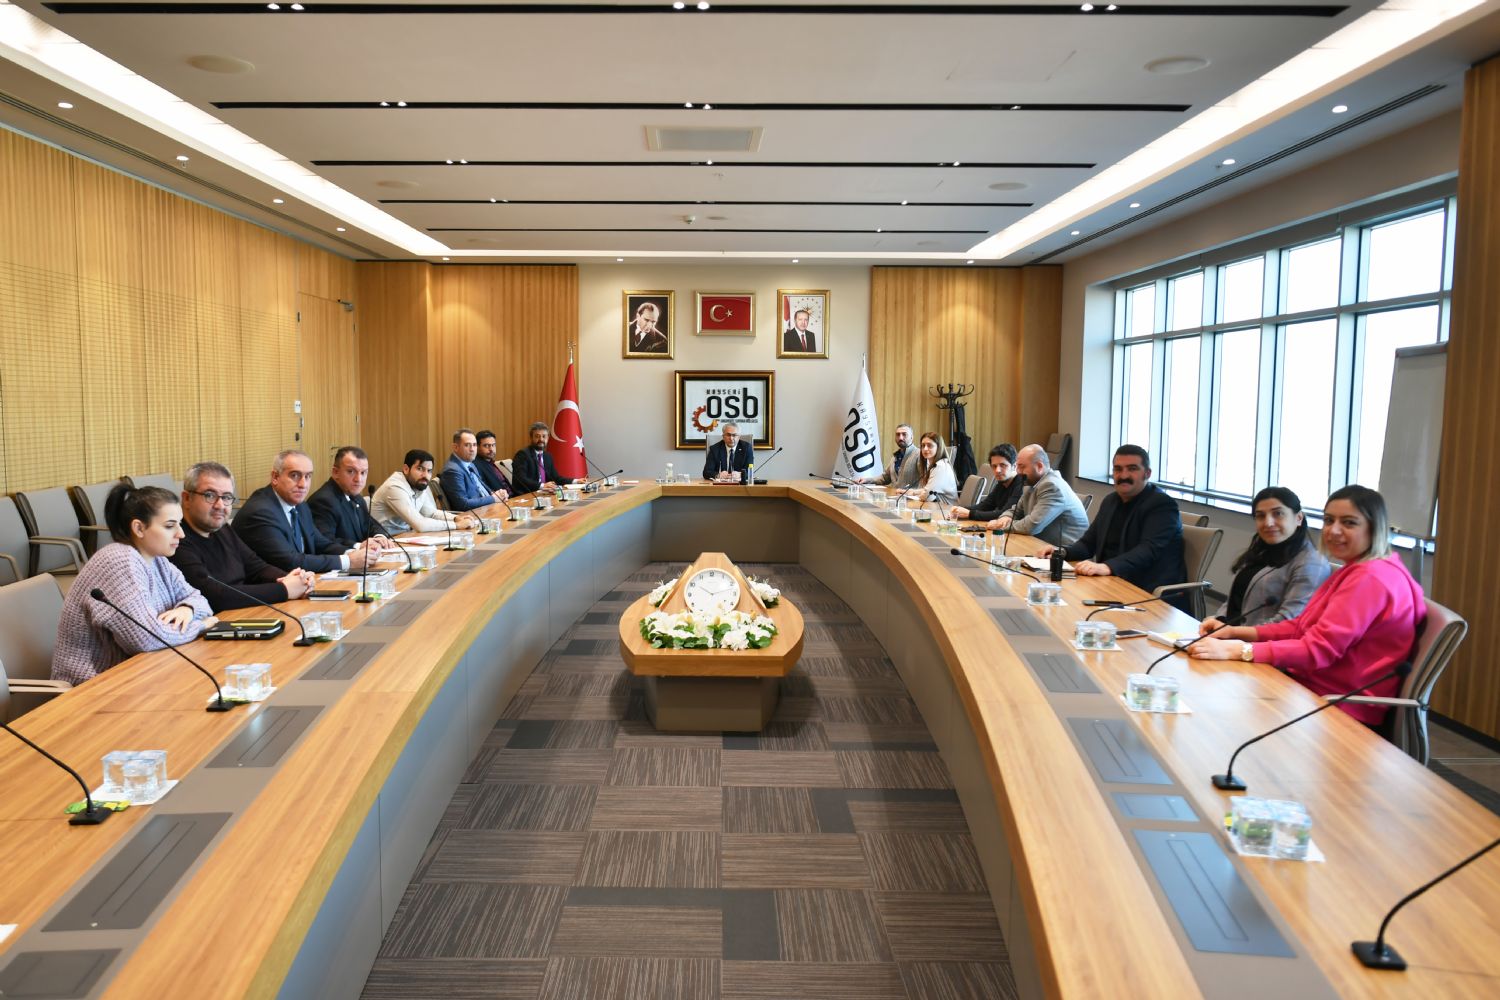 Kayseri OSB Bölge Müdürlüğü Ocak Ayı İş Sağlığı ve Güvenliği Kurulu Değerlendirme Toplantısı Yapıldı.